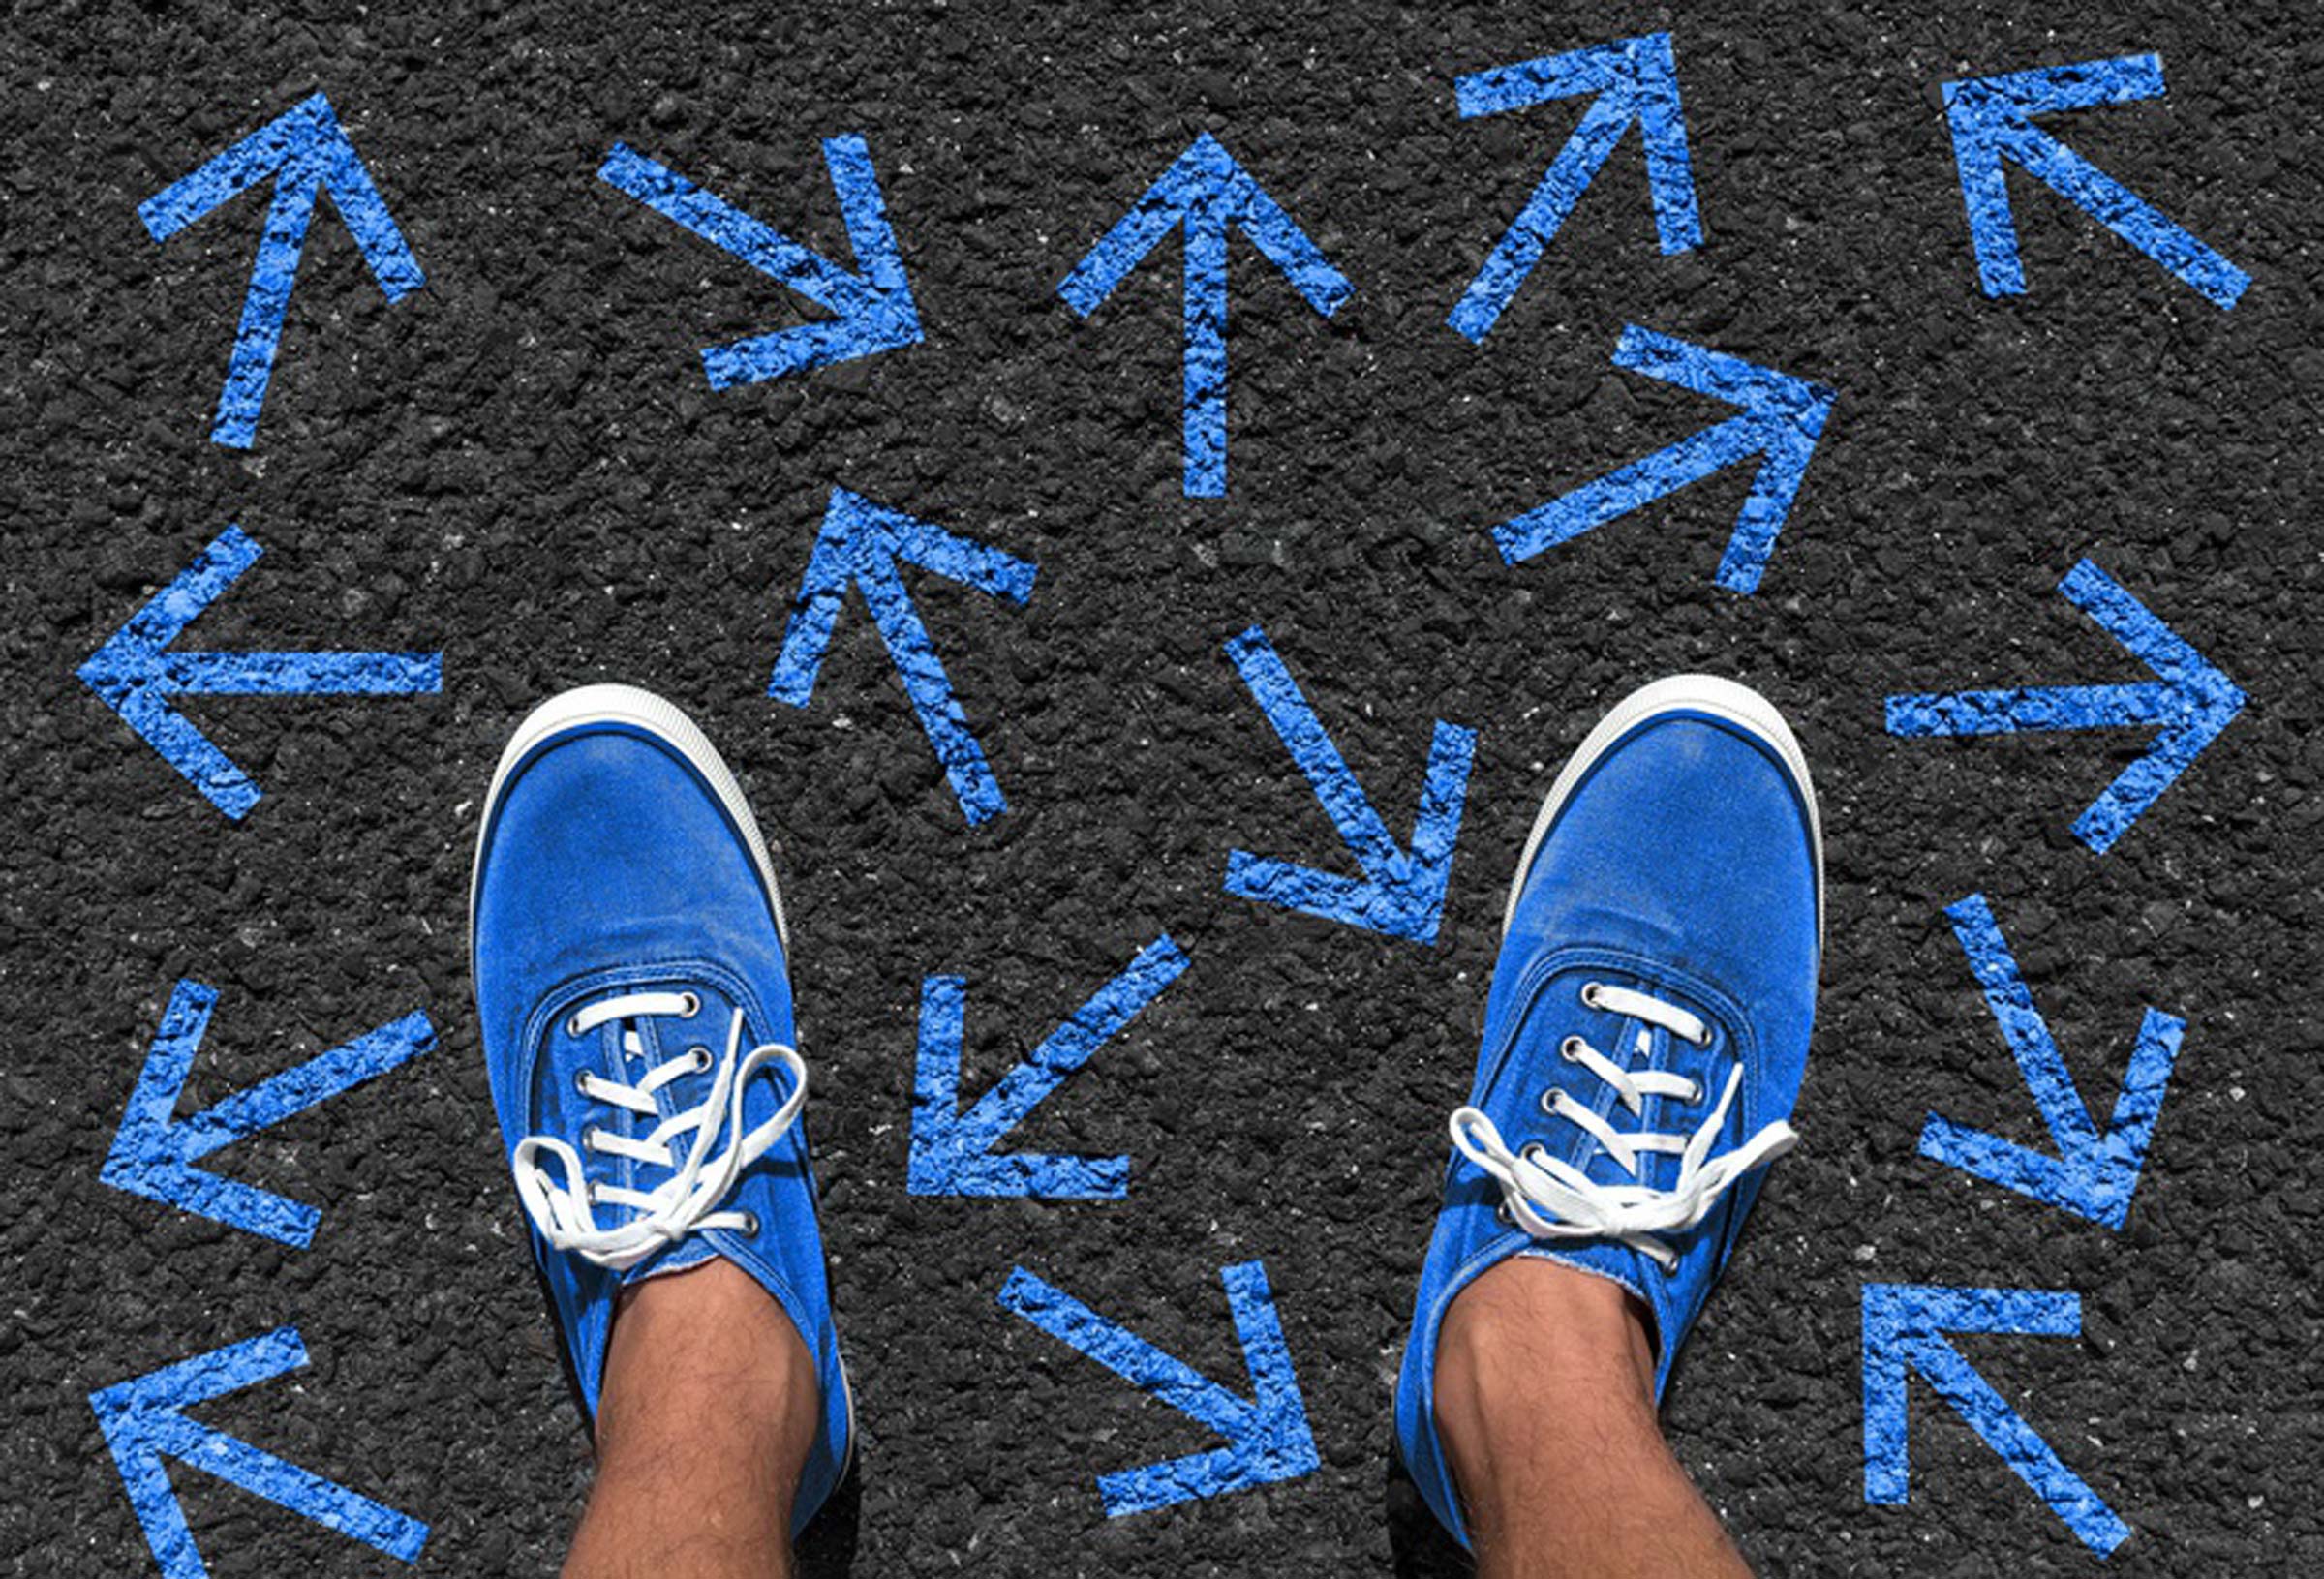 Blaue Schuhe folgen stehen auf vielen kleinen Blauen Pfeile - Projekt JobGo - Orientierung nach der Schule